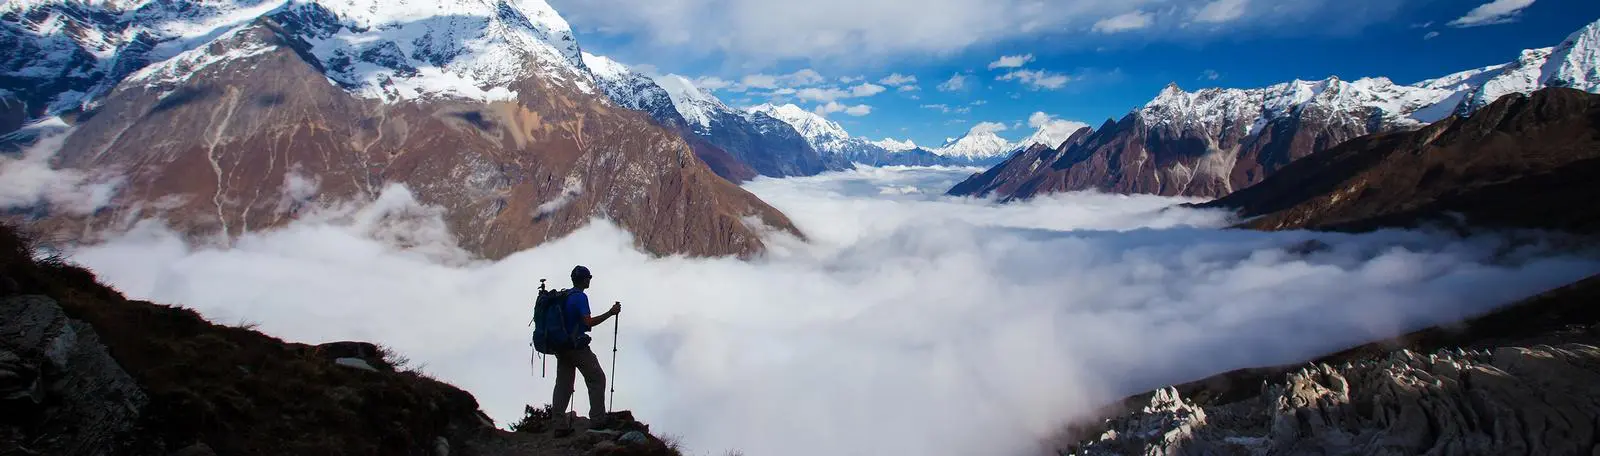 Panorama von einer Berglandschaft, die von einem Bergsteiger genossen wird